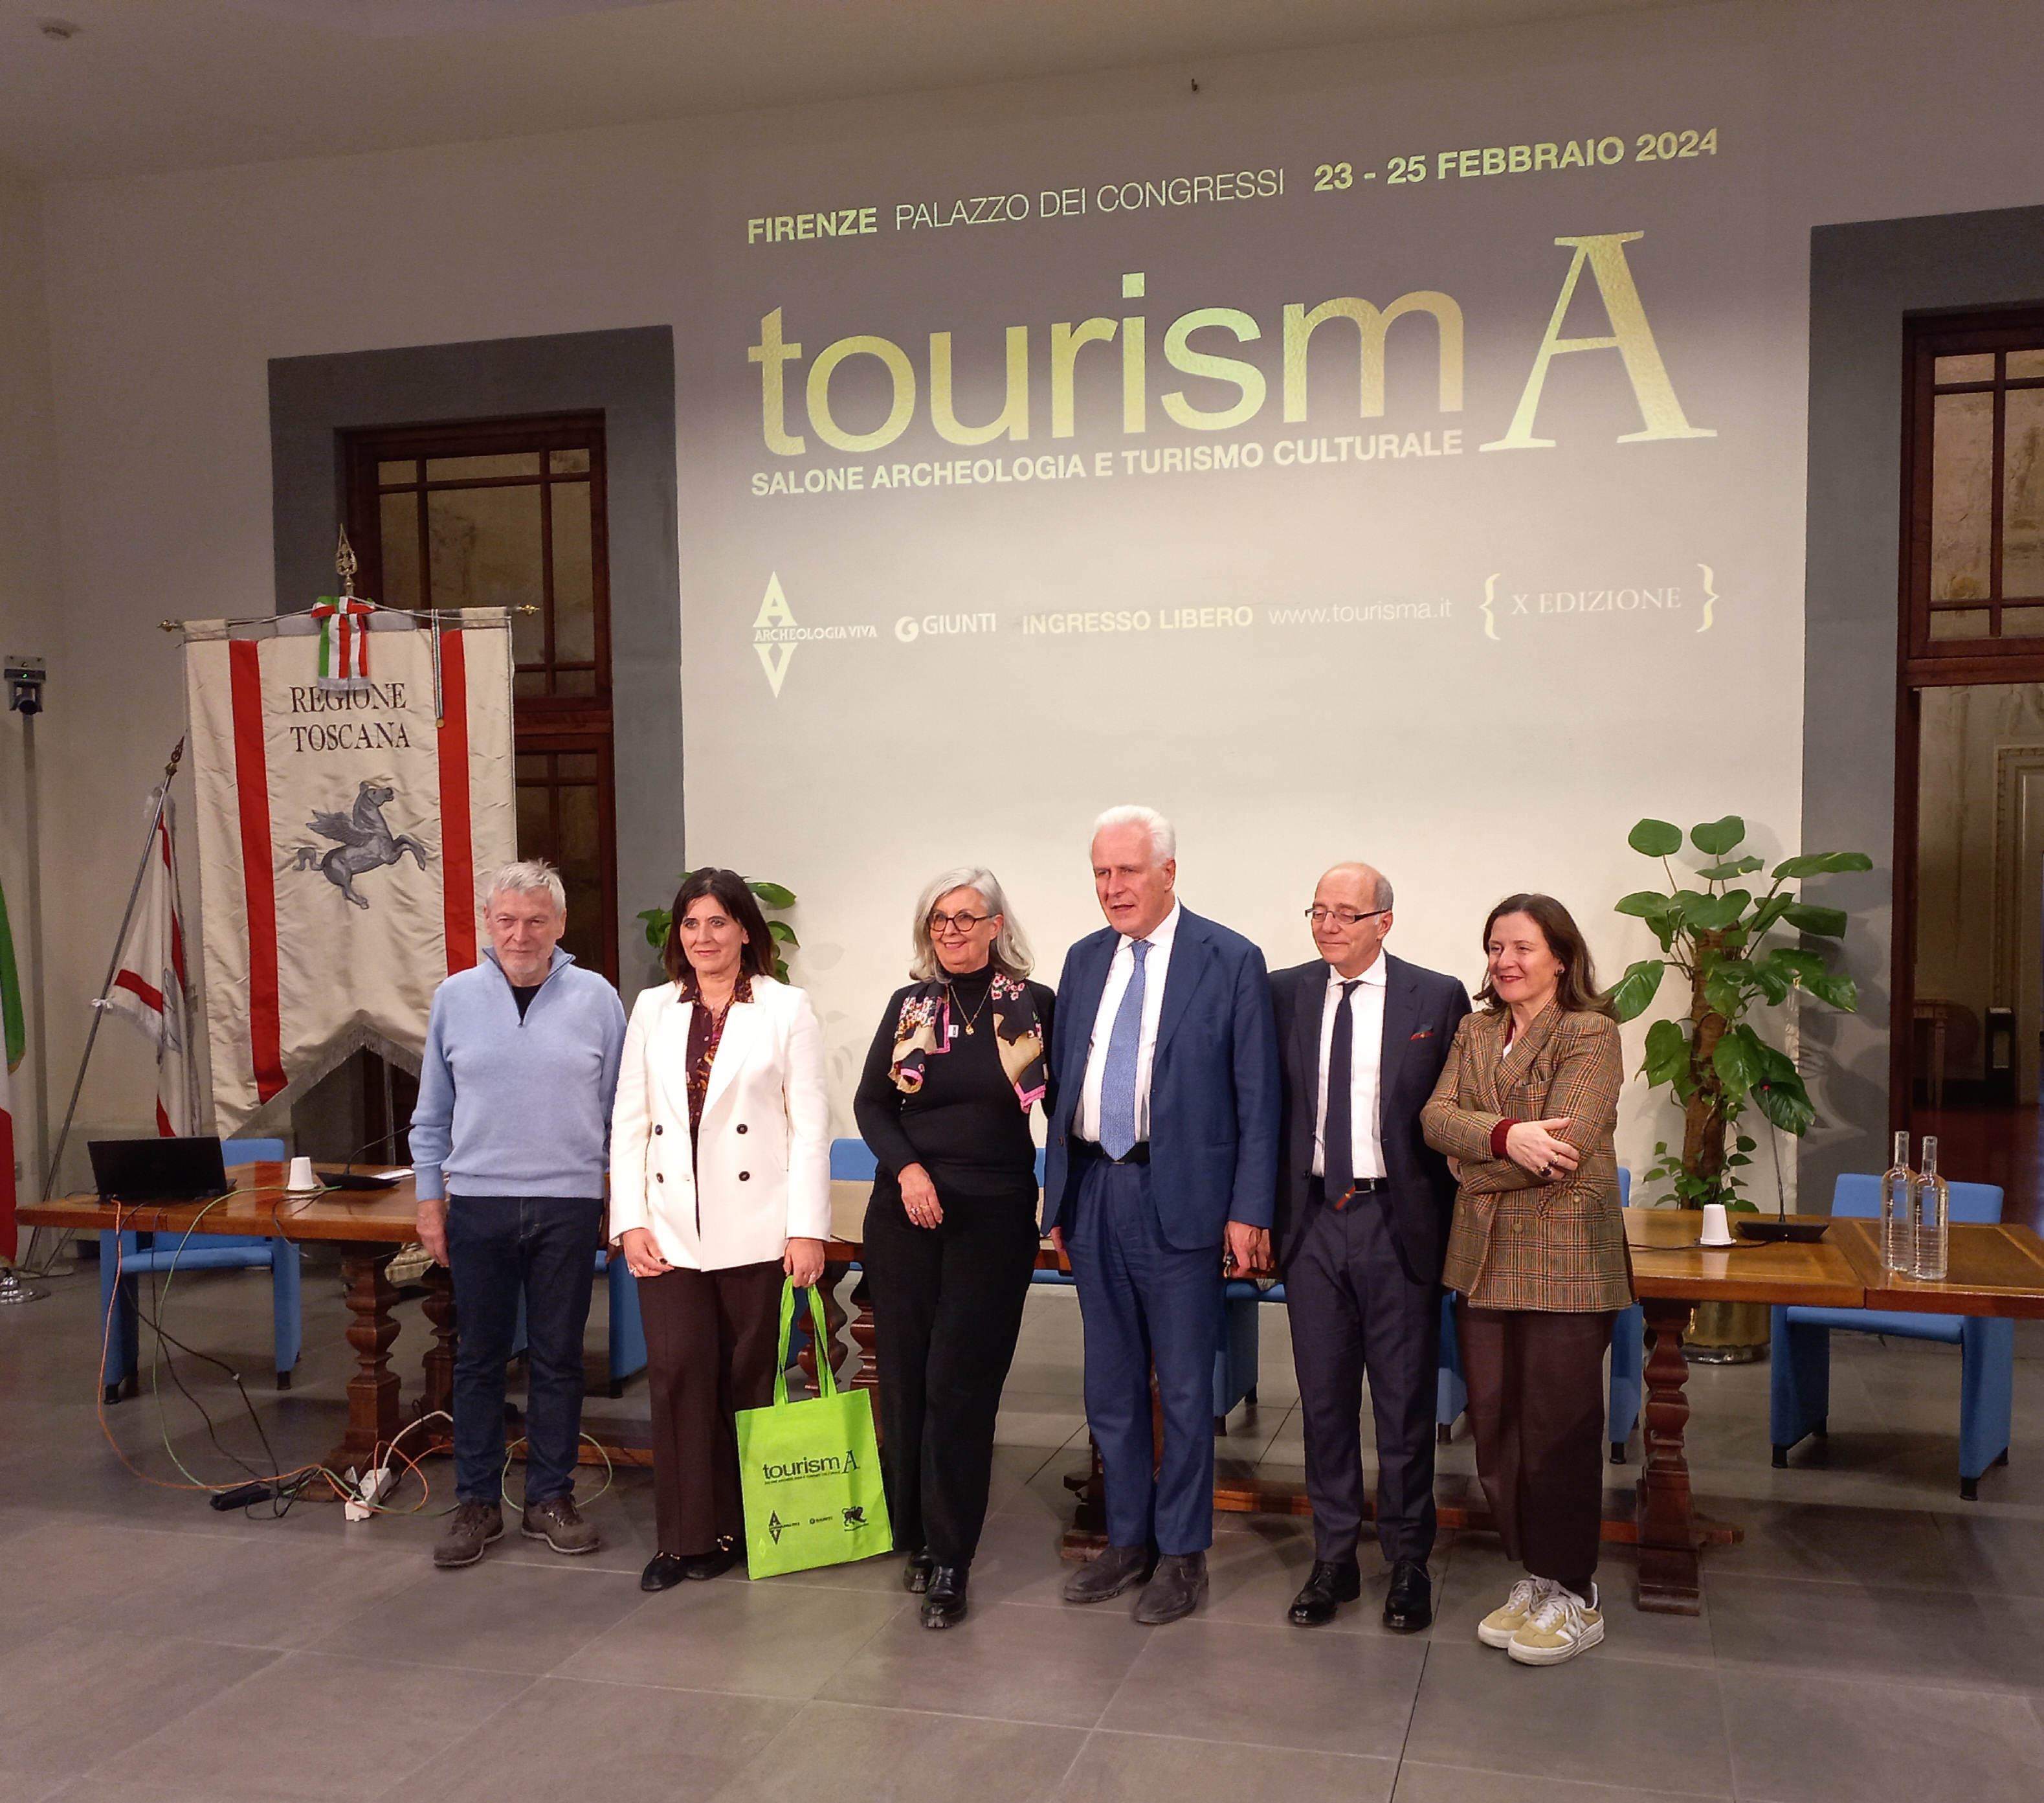 TourismA, il salone dell’archeologia e del turismo culturale dal 23 al 25 febbraio a Firenze